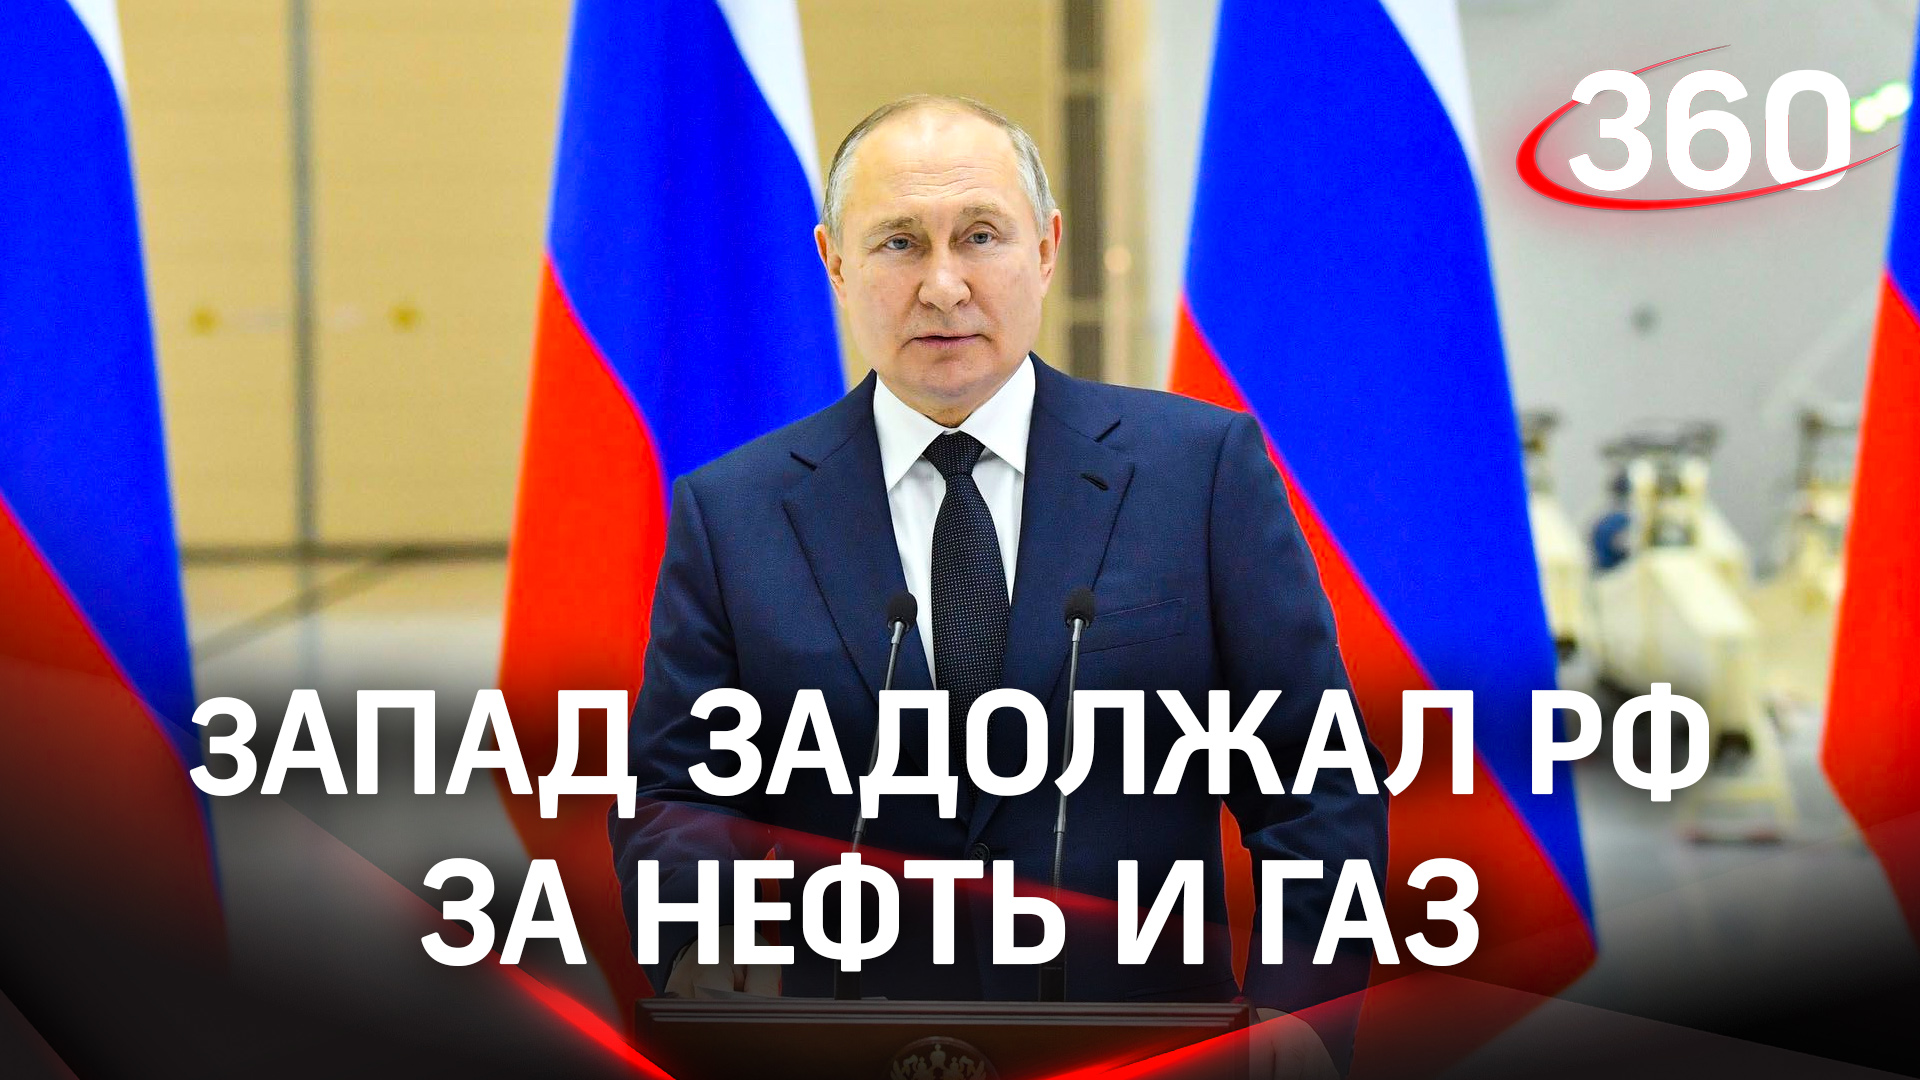 Недружественные страны задерживают оплату за российские нефть и газ – Путин